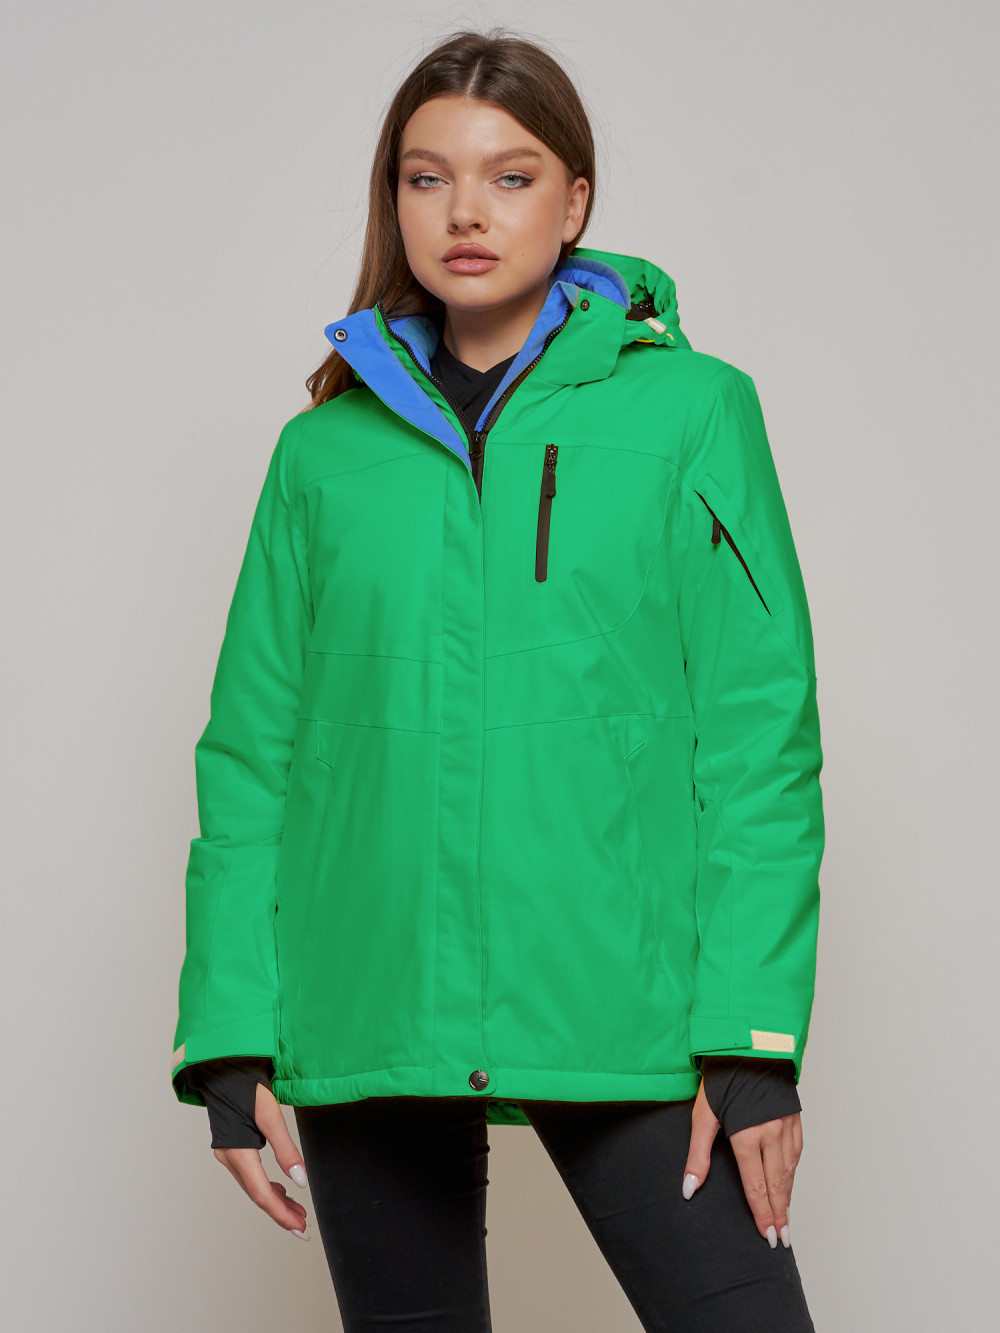 Купить оптом Горнолыжная куртка женская зимняя зеленого цвета 05Z в Екатеринбурге